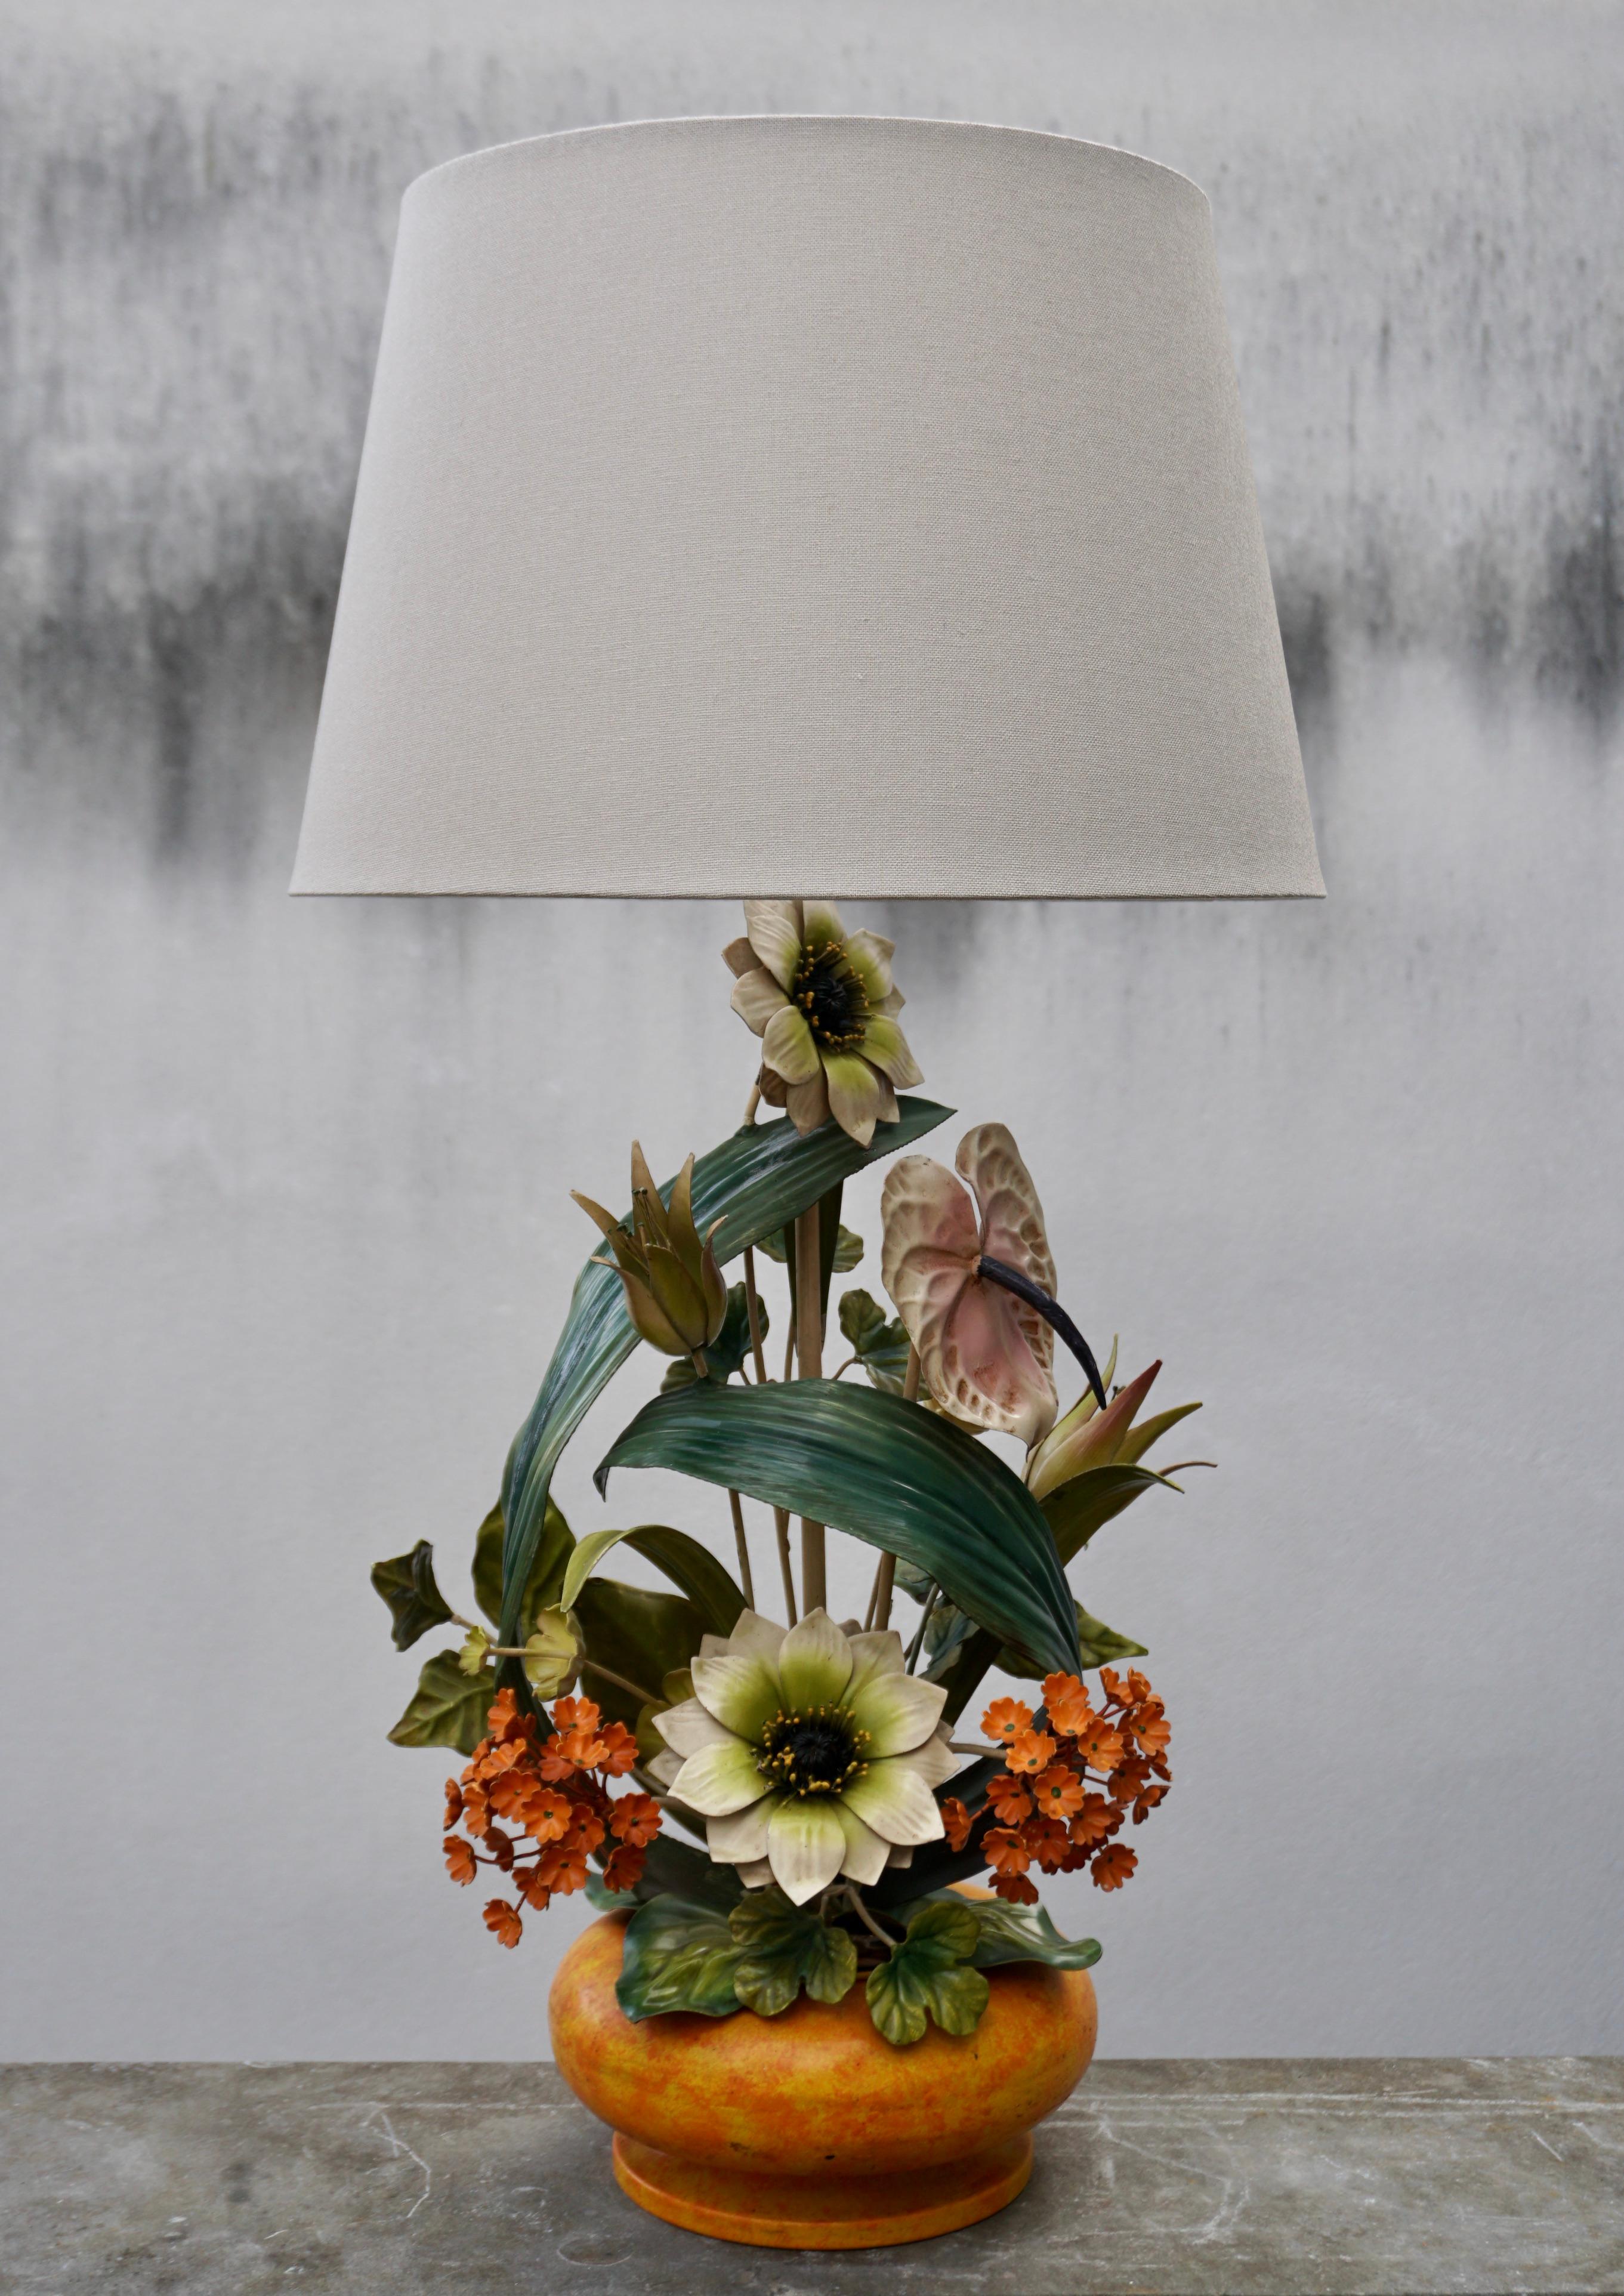 Vintage tole toleware metal art flower table lamp.

Cette lampe de table italienne du milieu du siècle est ornée de fleurs et de feuilles.

Hauteur de la base y compris la fixation 24.8